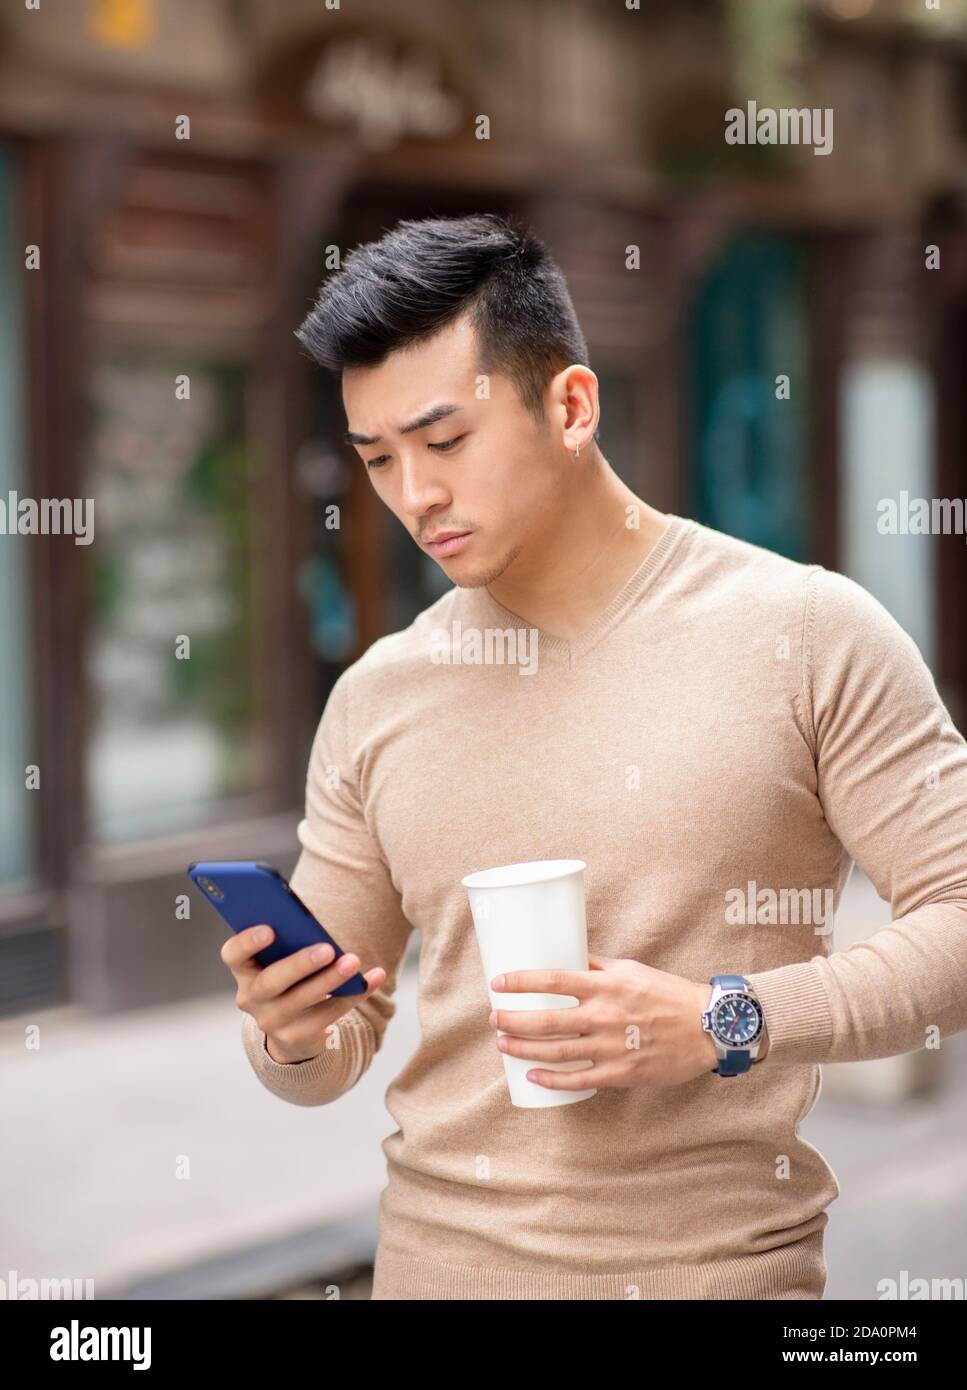 Homme asiatique debout dans la rue avec boisson chaude aromatique à lire des messages sur les réseaux sociaux via un téléphone portable Banque D'Images